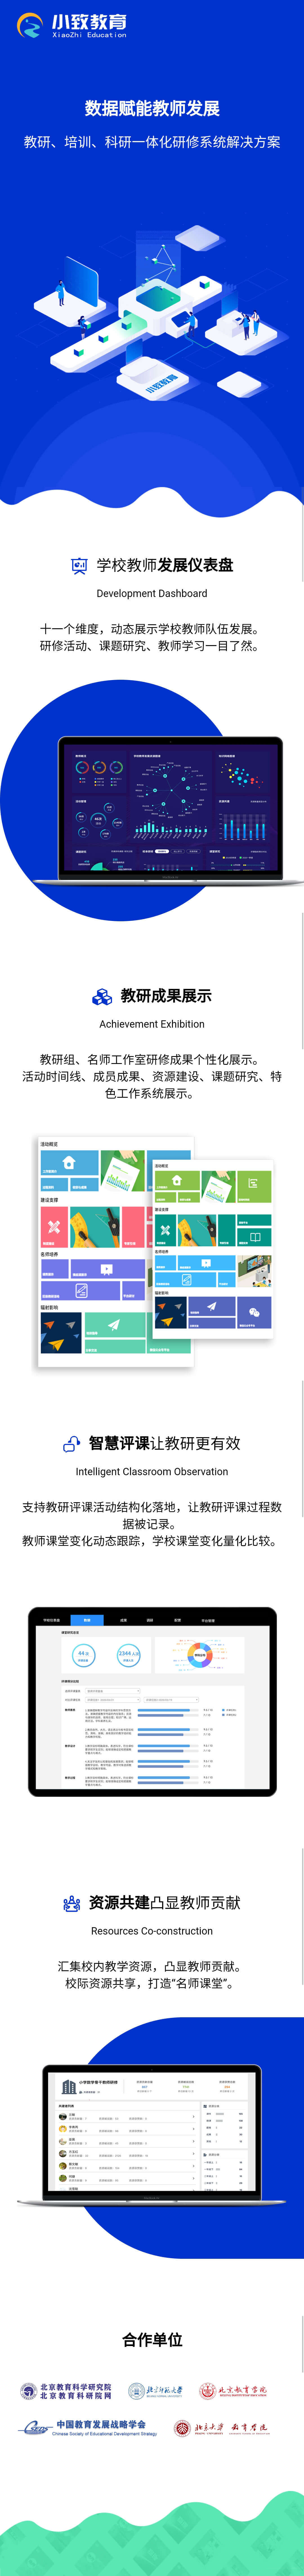 北京小致教育科技有限公司教育类网站设计（数据仪导盘，网站页面）图5